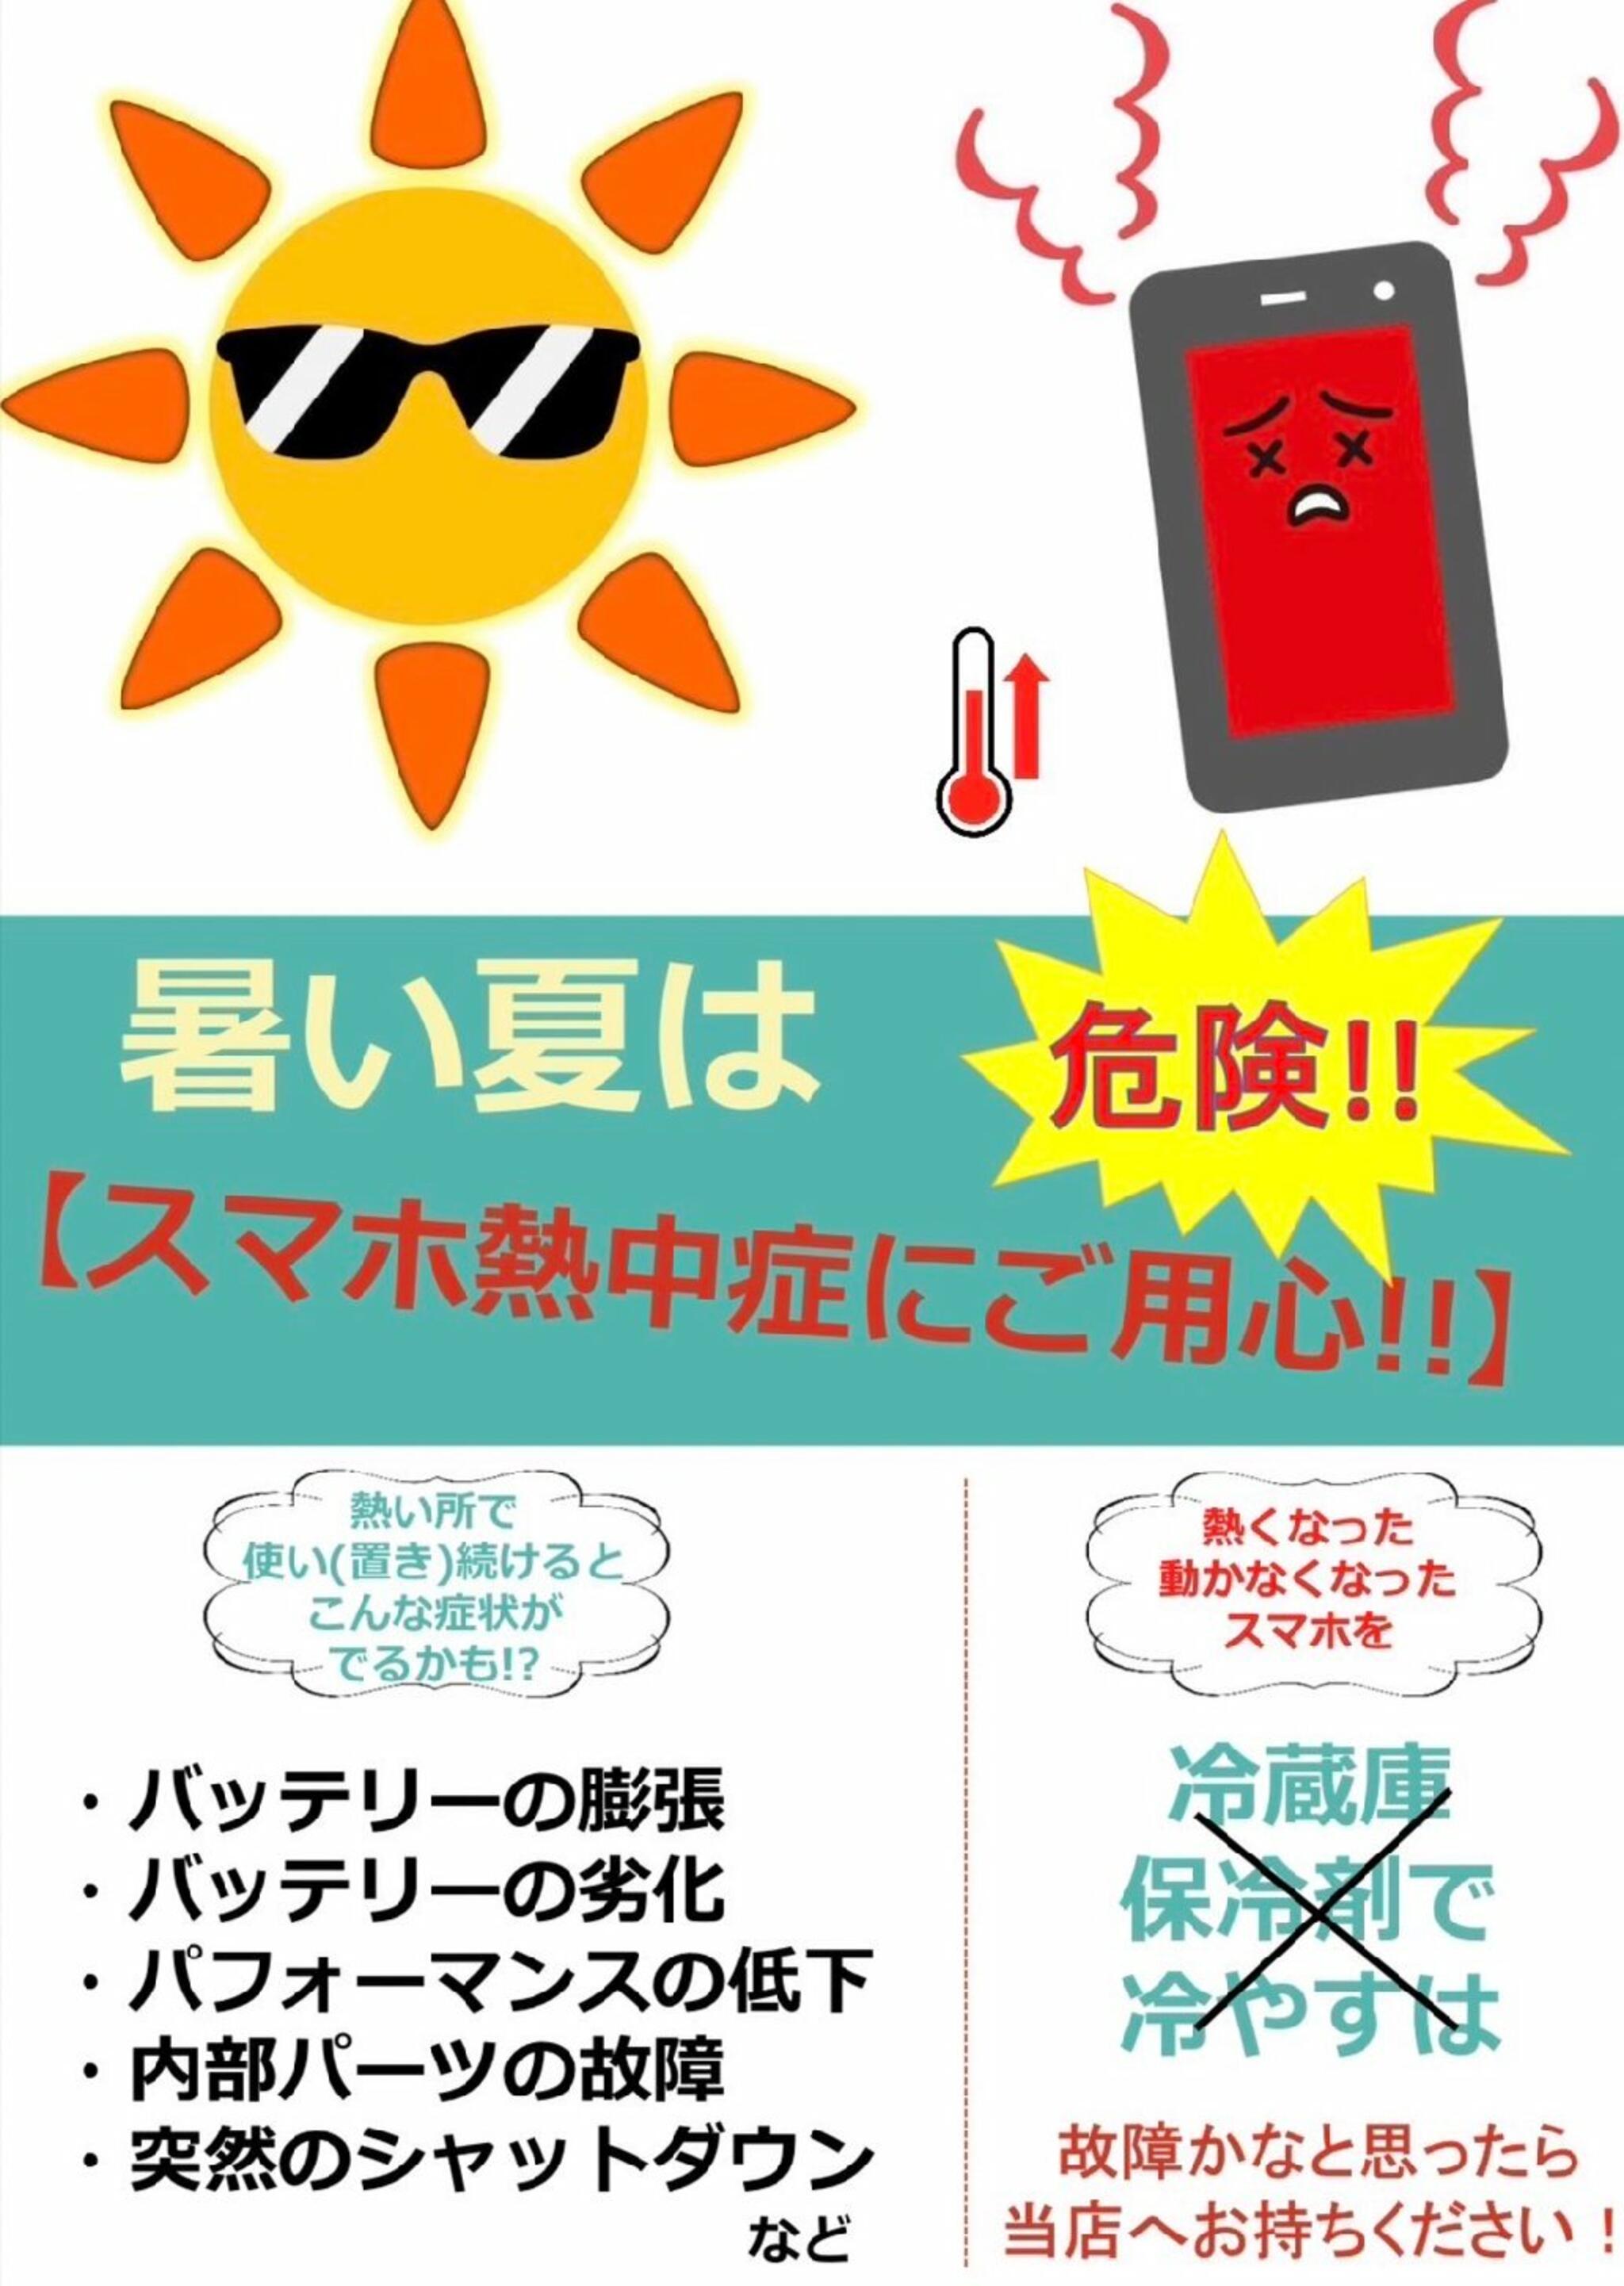 iPhone・iPad・Switch修理店 スマートクール イオンモール広島祇園店からのお知らせ(スマホ の熱中症にもご注意を！)に関する写真